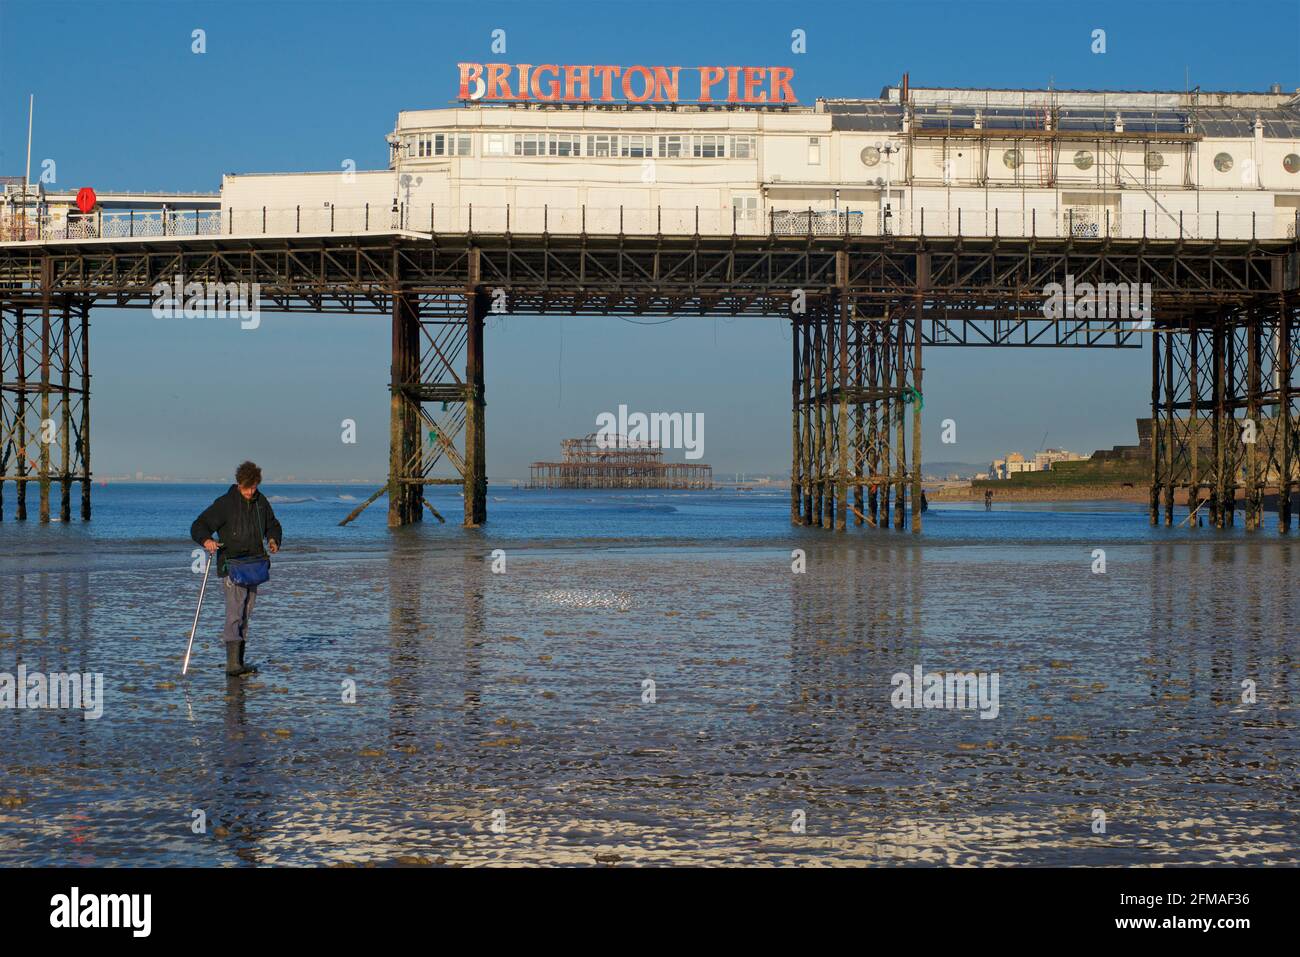 West Pier de Brighton en ruines encadré dans la structure de Brighton Pier, le Palace Pier. Pêcheur collectant de la ragose pour appât au premier plan. Banque D'Images